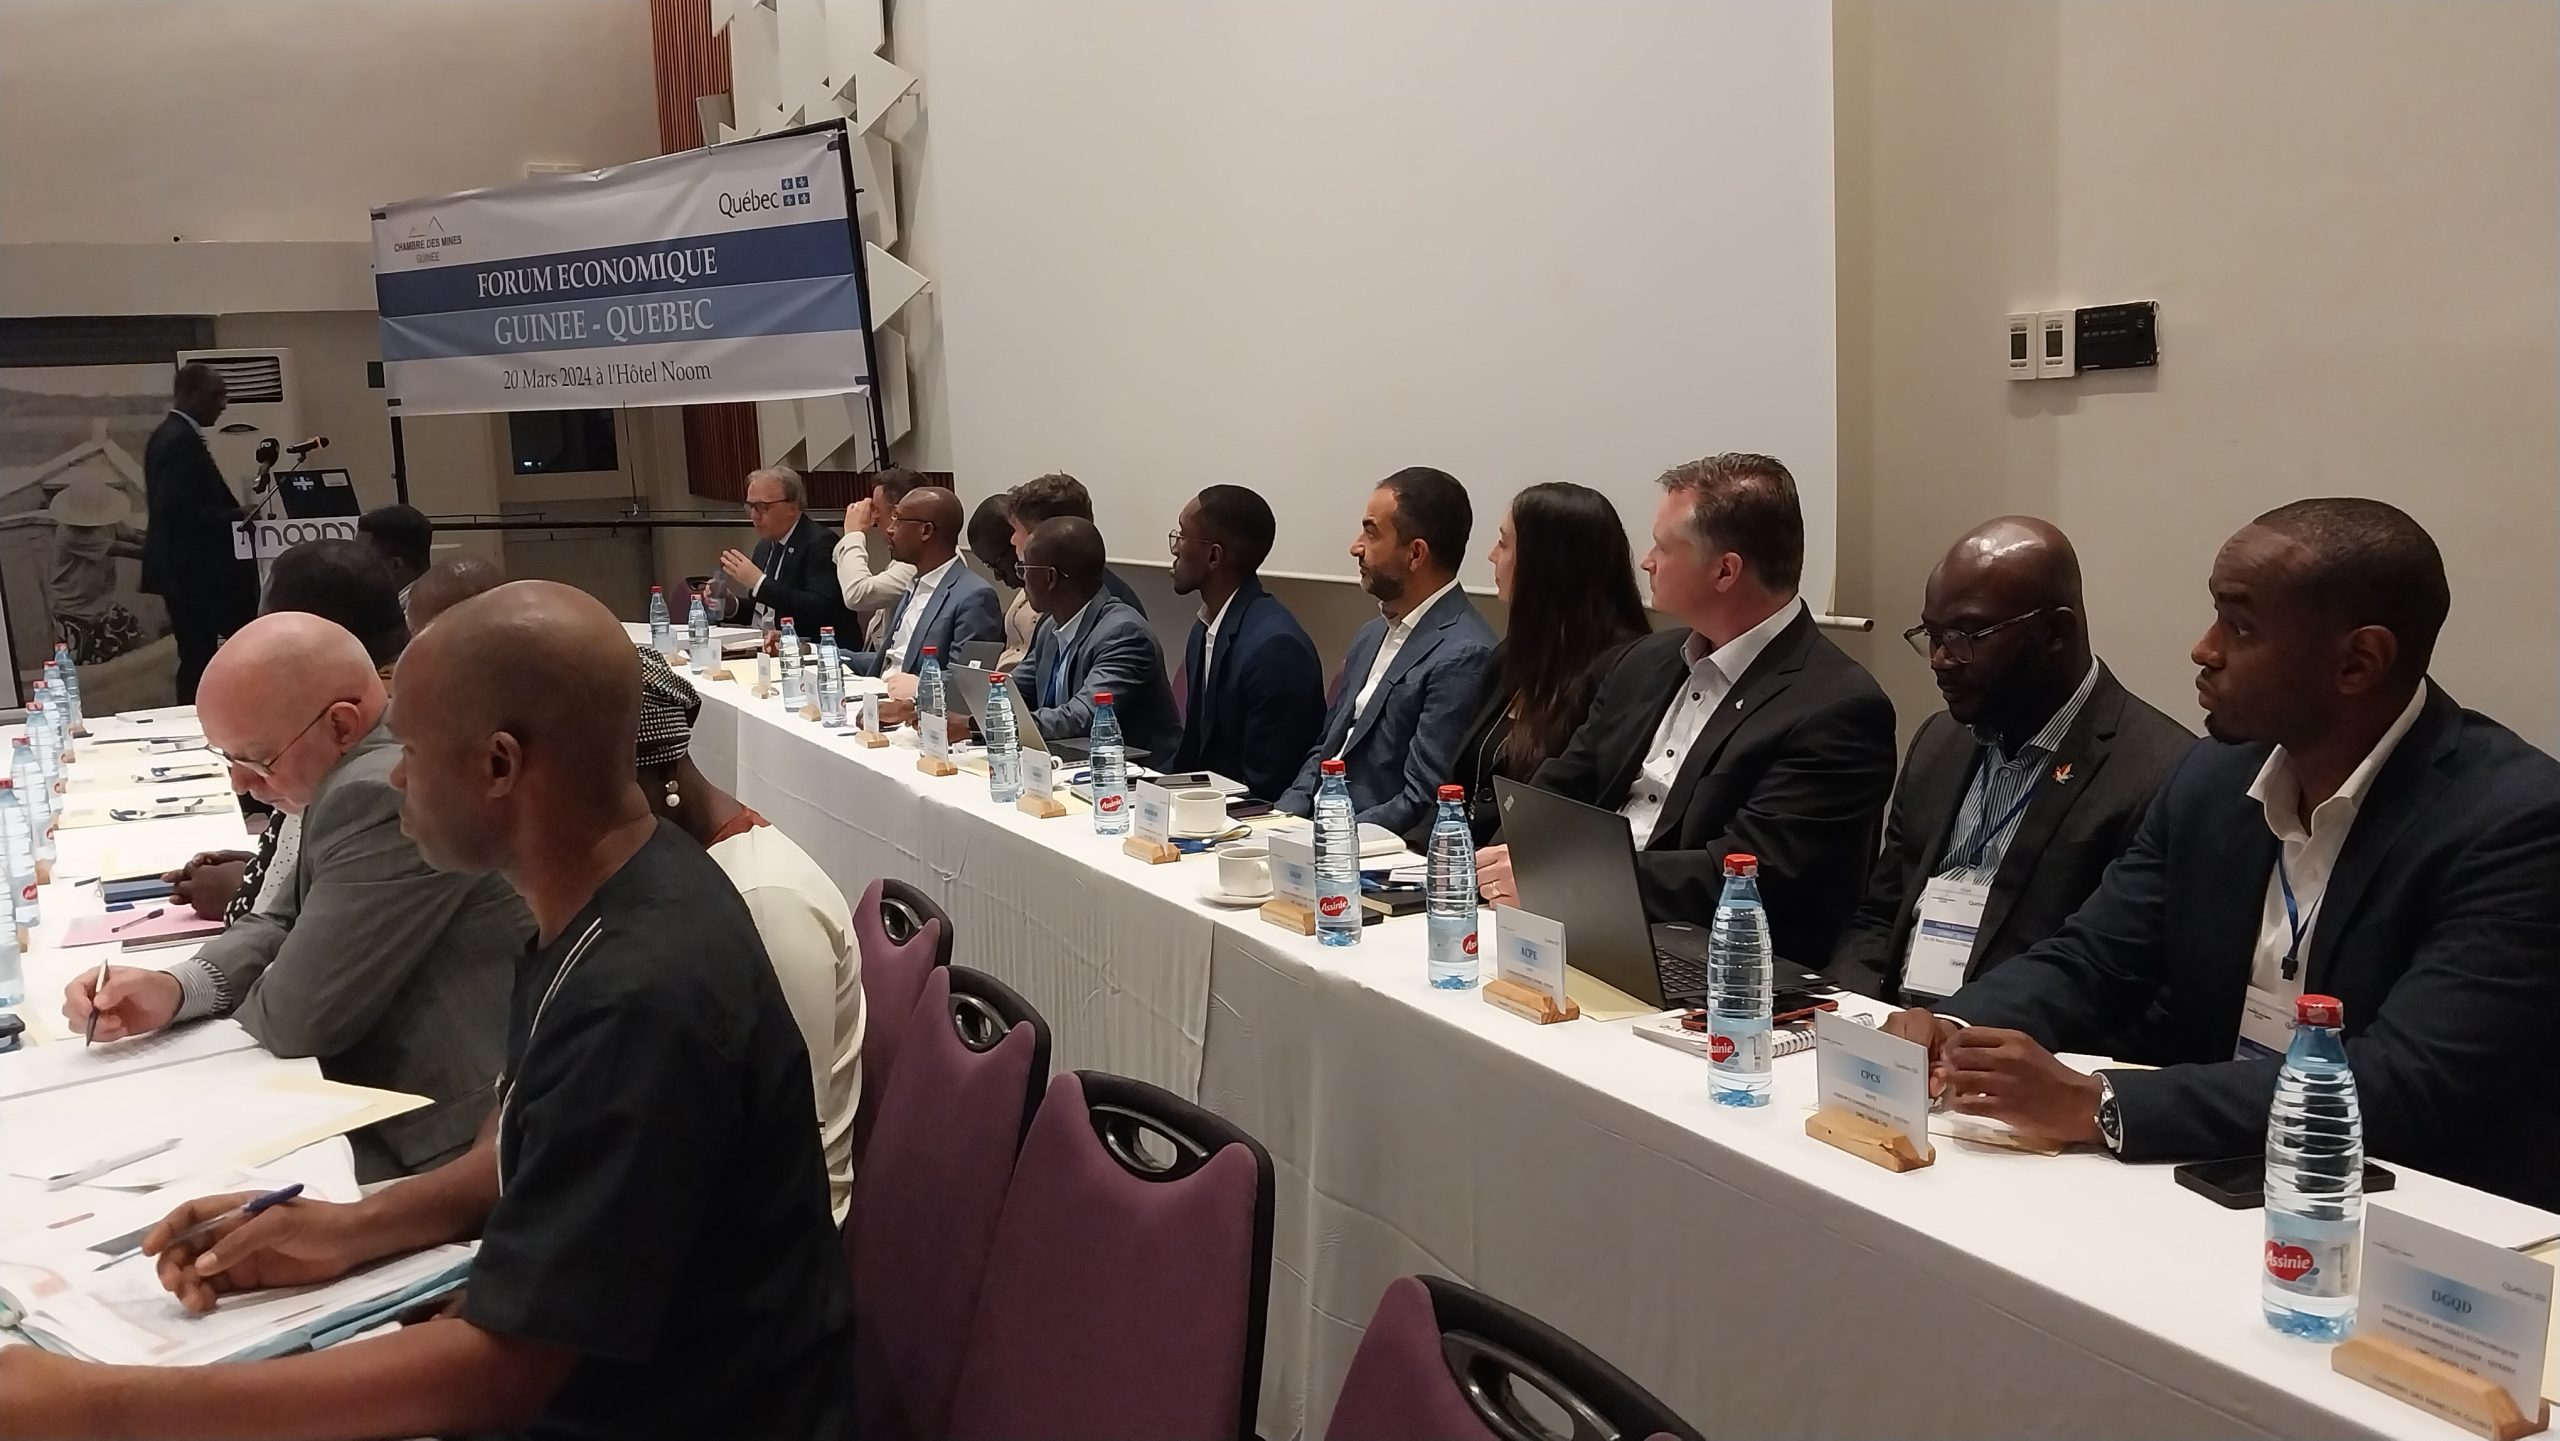 Forum économique Guinée-Québec : bilan et vérités selon le diplomate Iya Touré